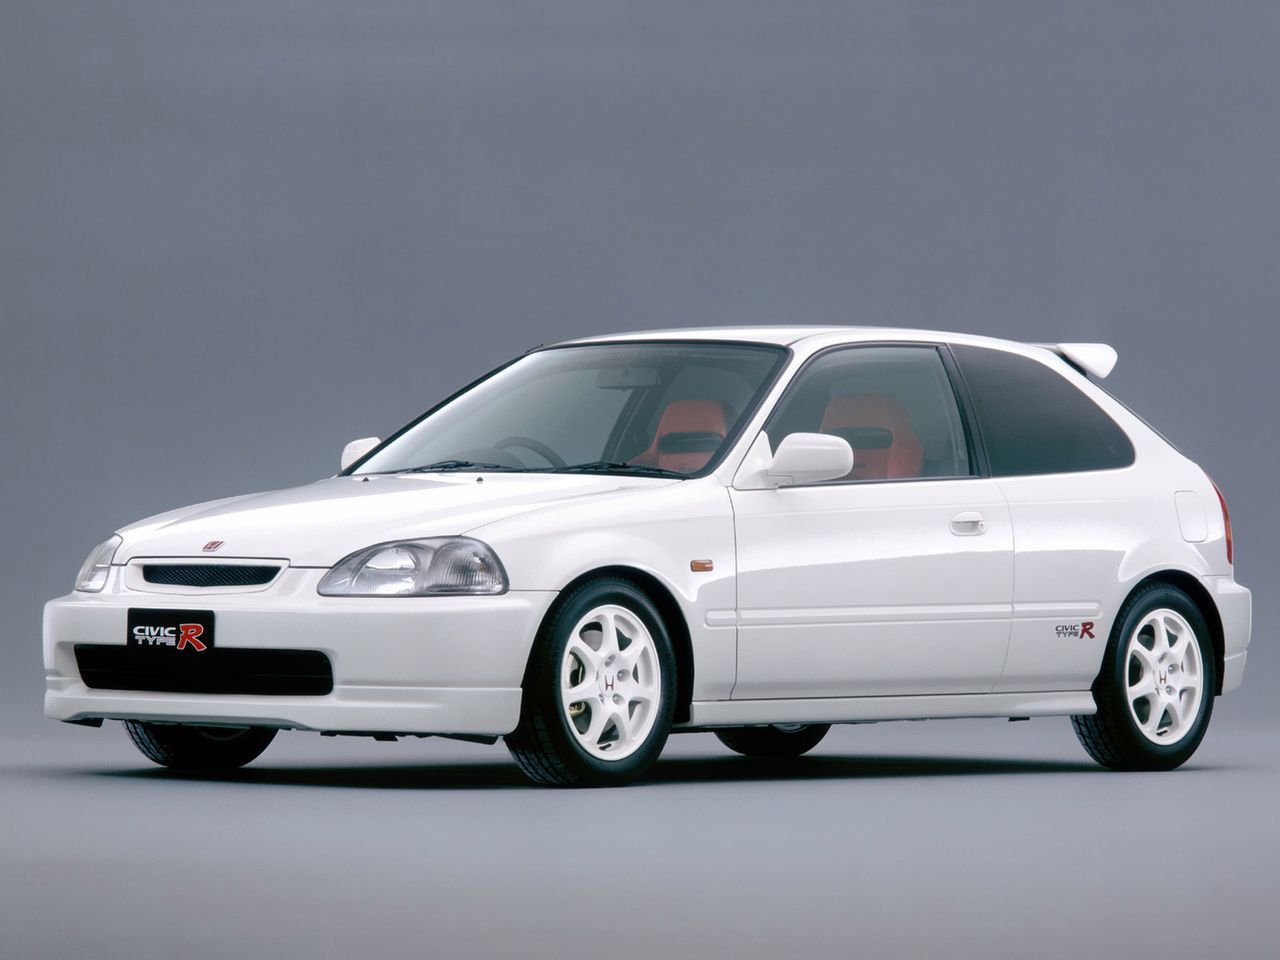 Honda Civic Type R - ewolucja japońskiego hot hatcha na zdjęciach [galeria]